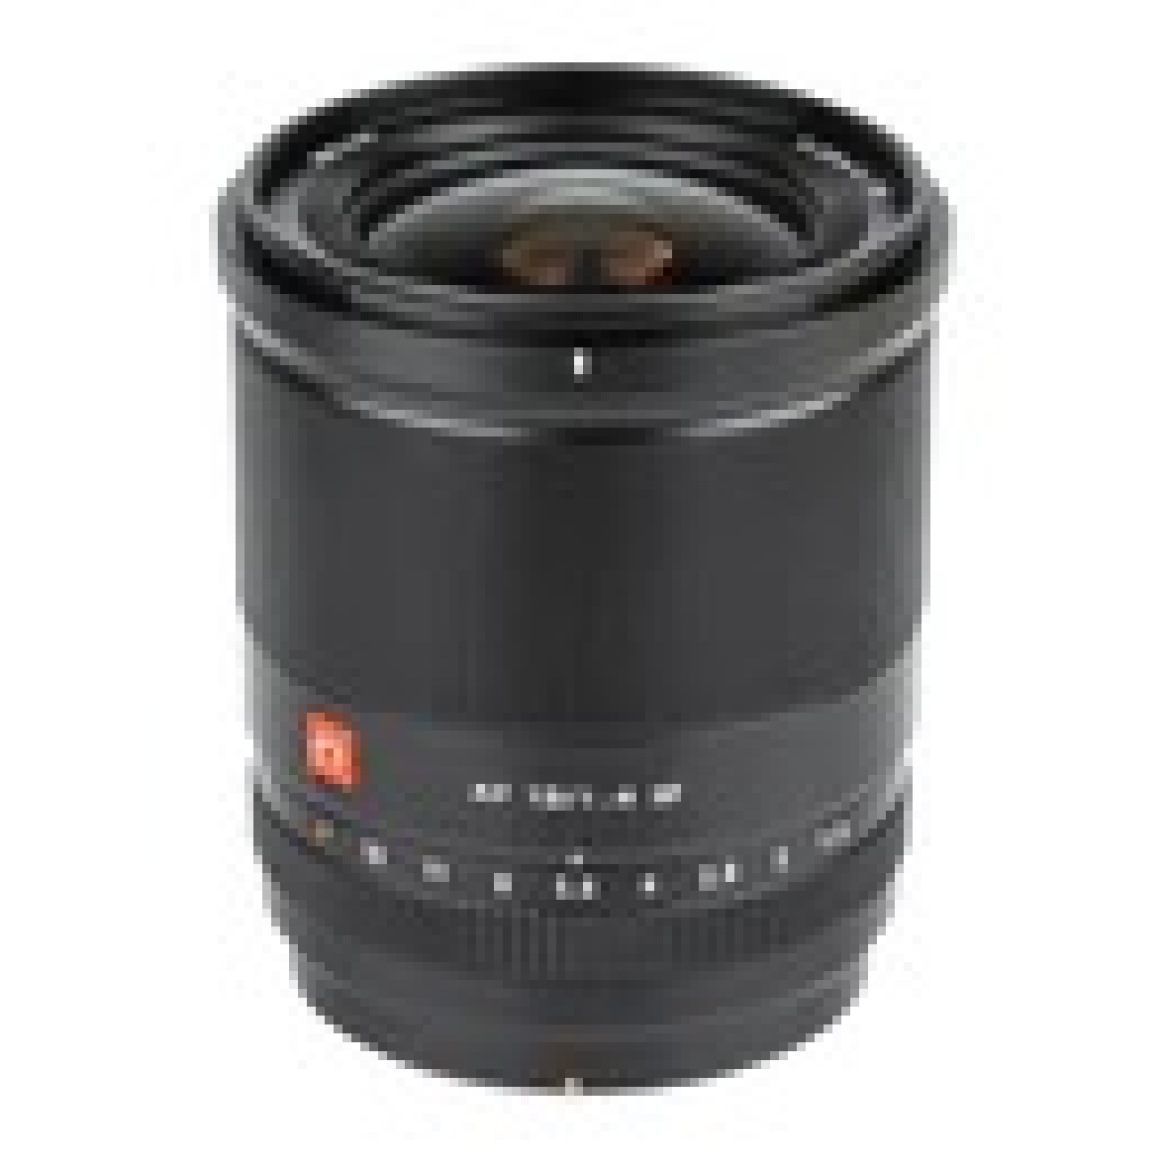 13mm f/1.4 AF Large Aperture Ultra Wide-angle Lens for Fuji X-Mount Cameras